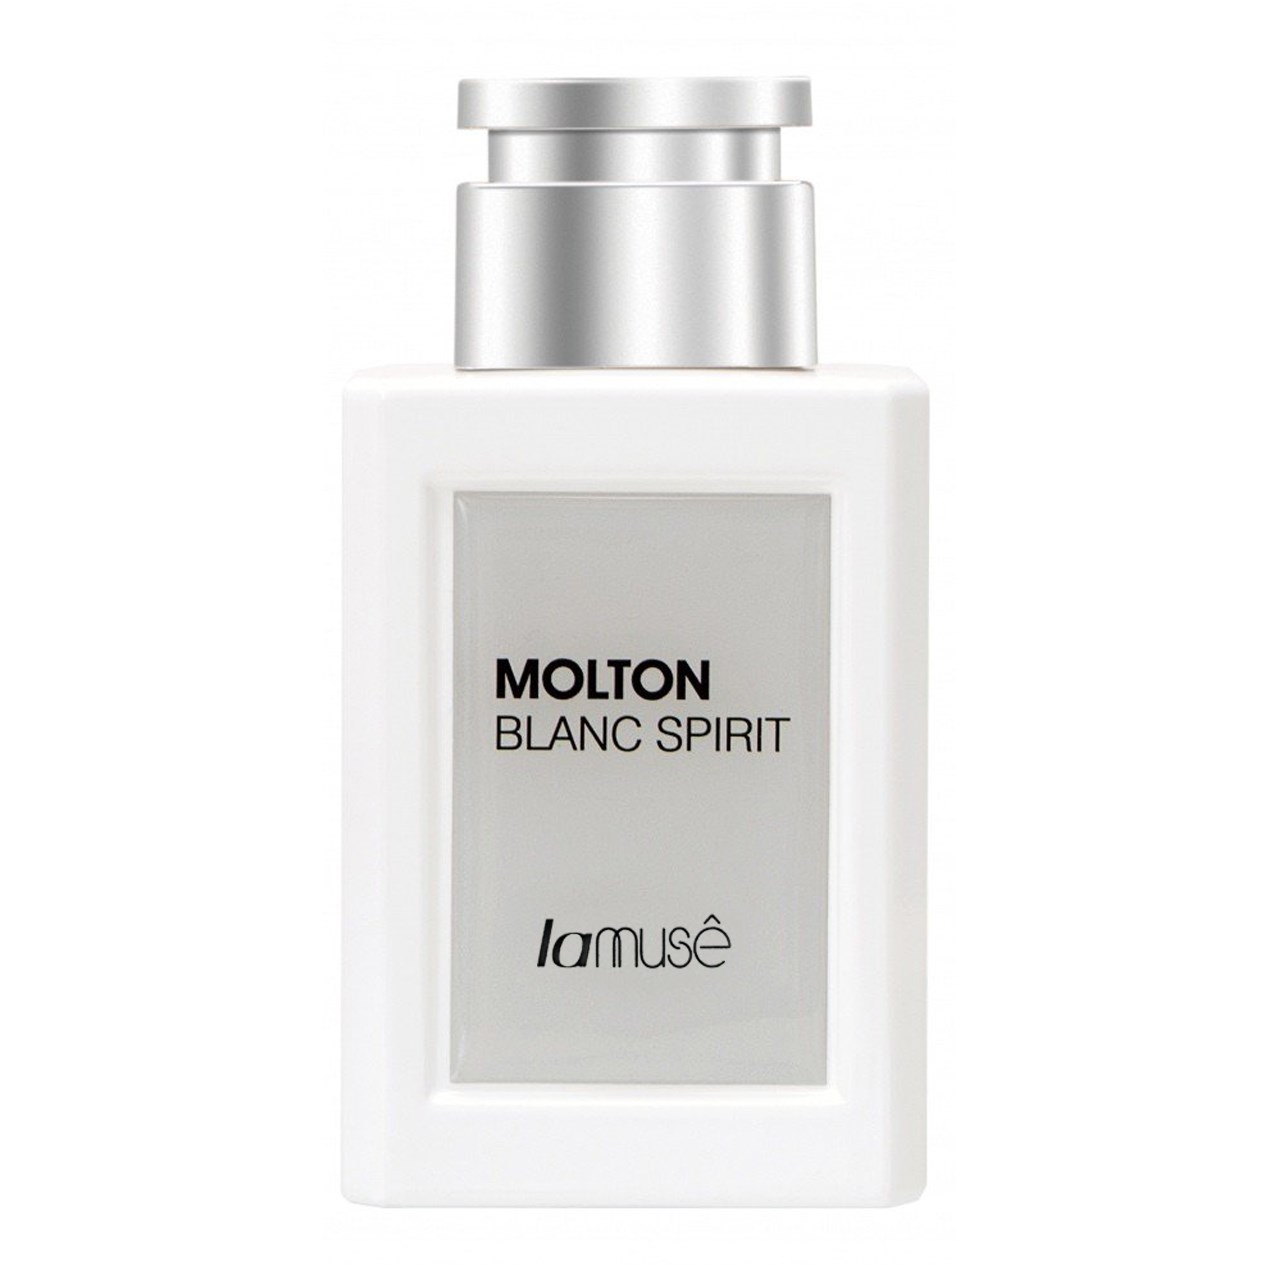 ادو پرفیوم مردانه لاموس مدل Molton Blanc Spirit حجم 80ml